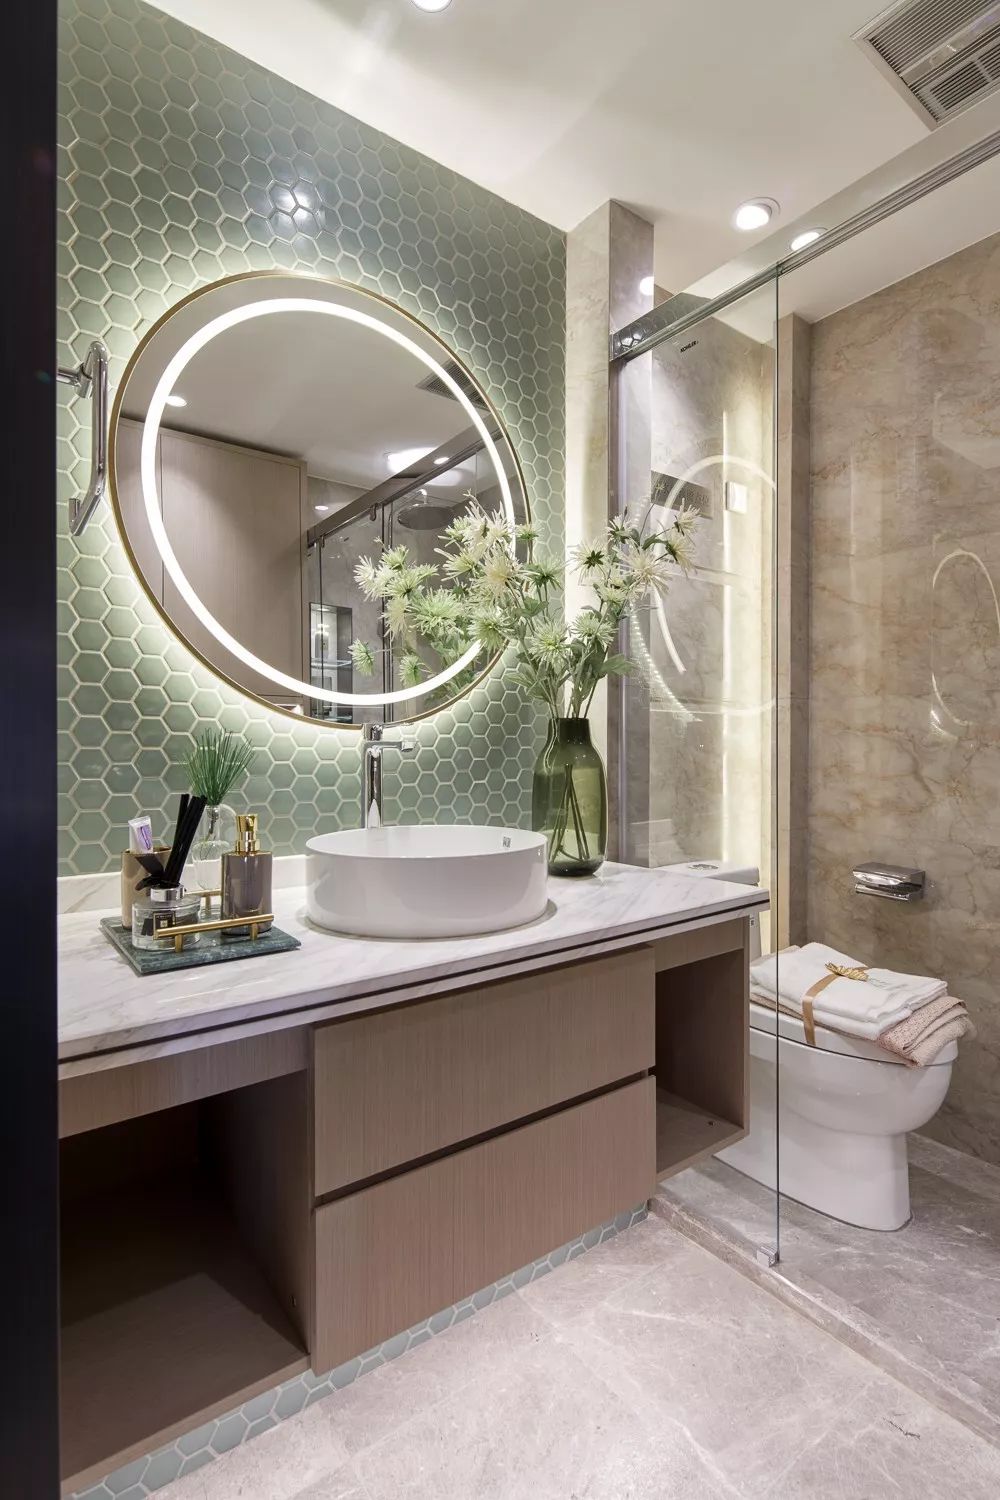 新中式風格家裝設計室內裝修效果圖-衛生間